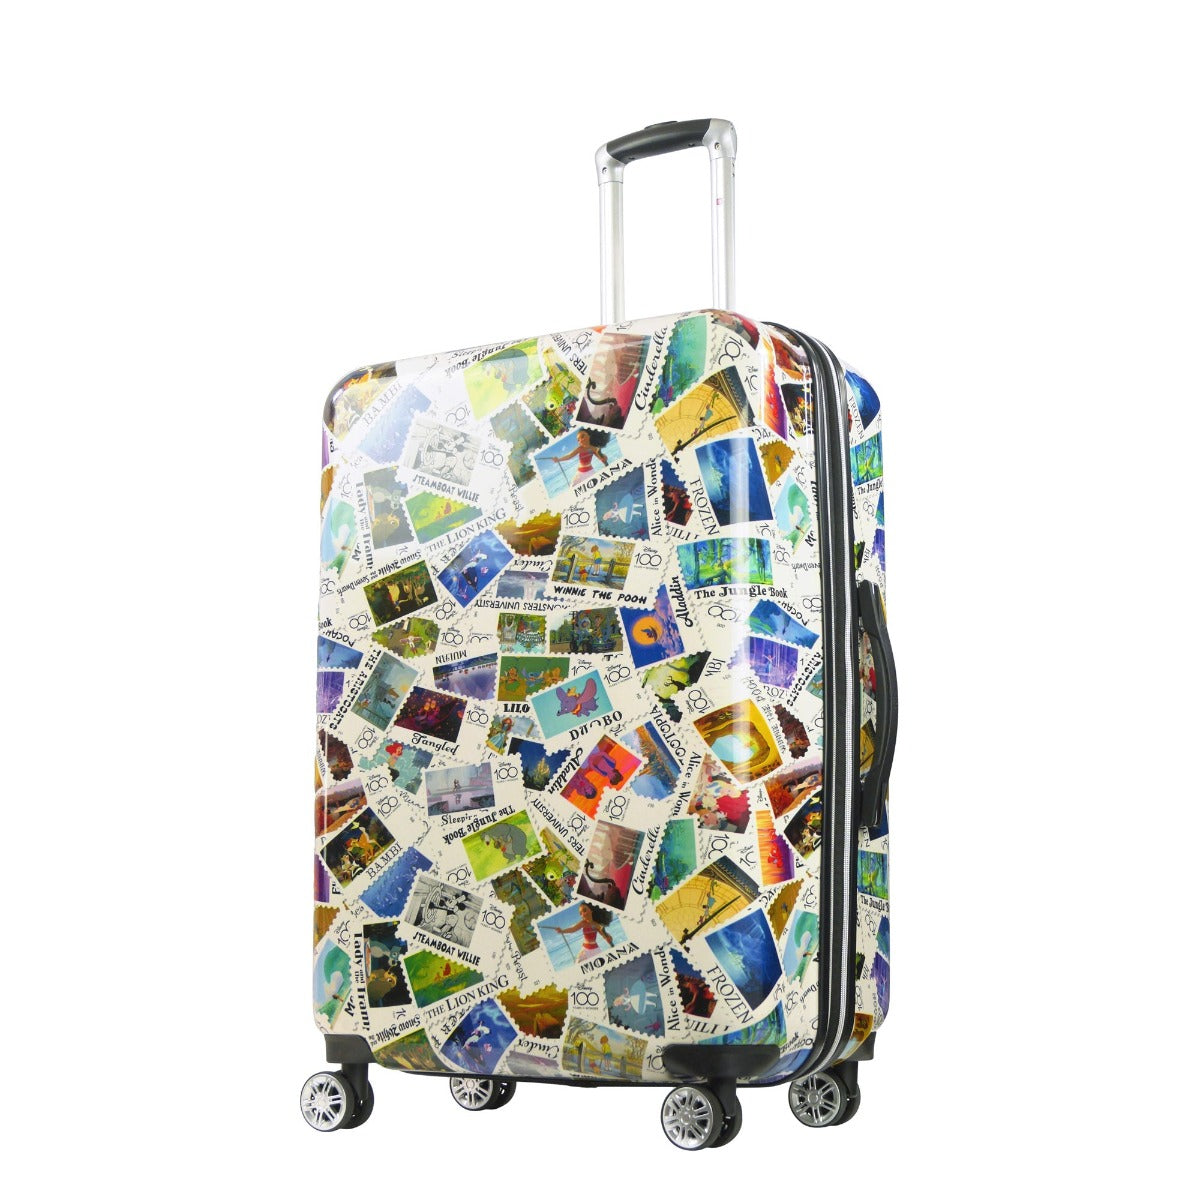 Wonder 3 Piece Expandable Luggage Set